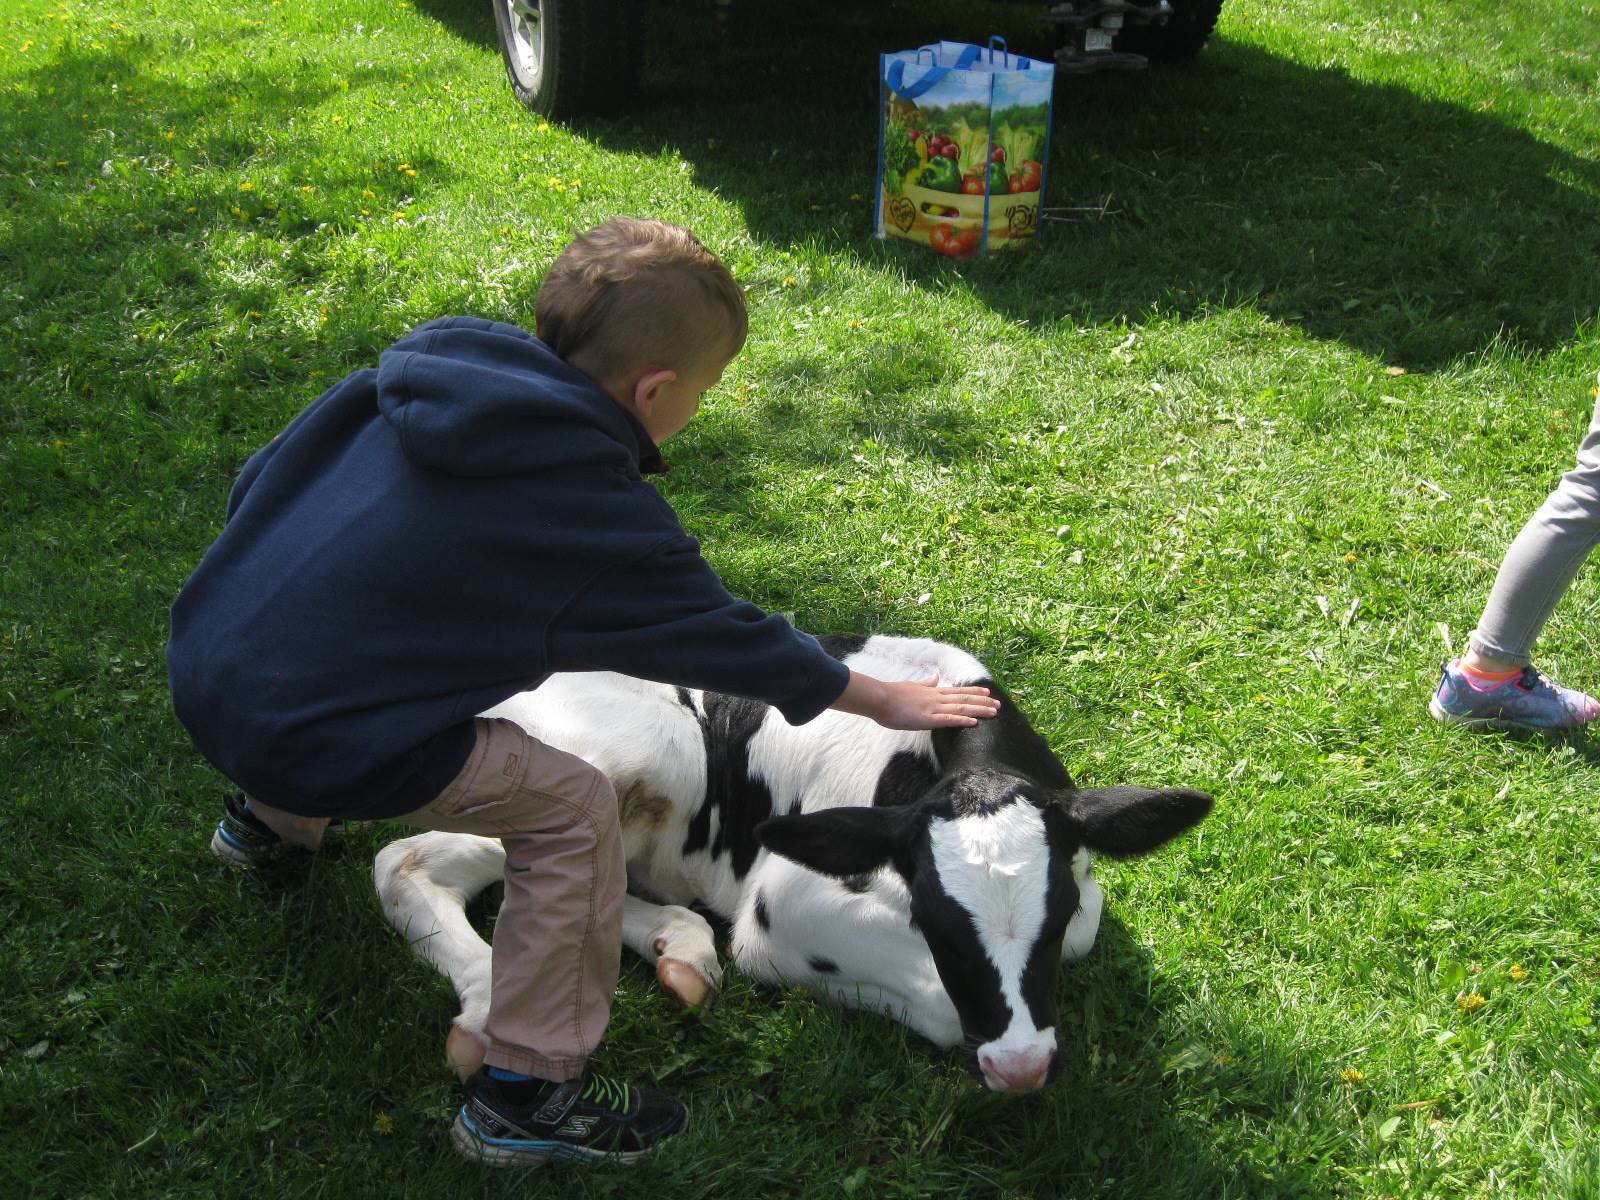 kindergartener pets a calf.